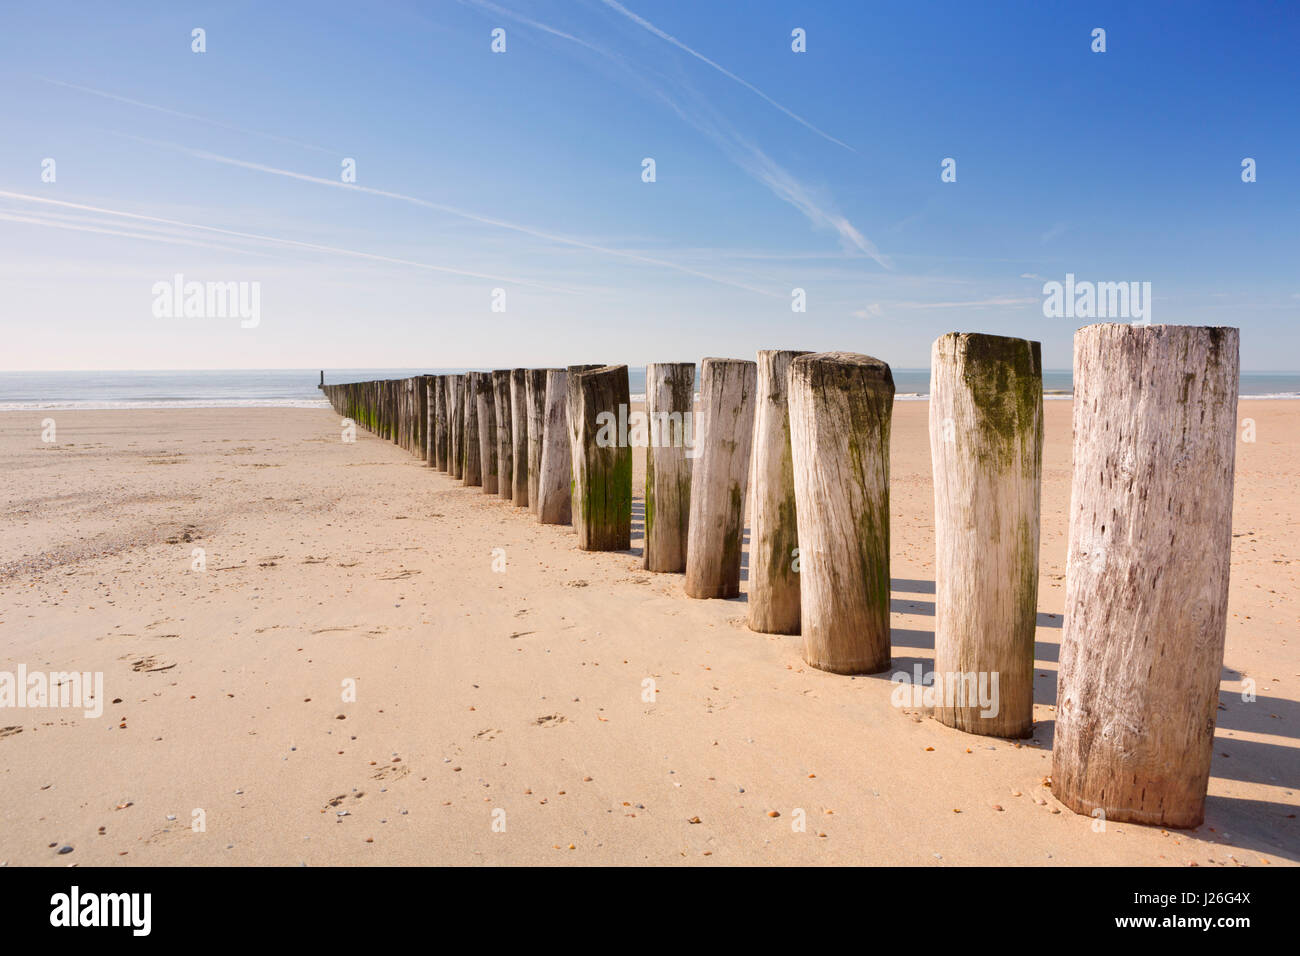 Eine hölzerne Buhne am Strand von Dishoek in Zeeland, Niederlande. Stockfoto